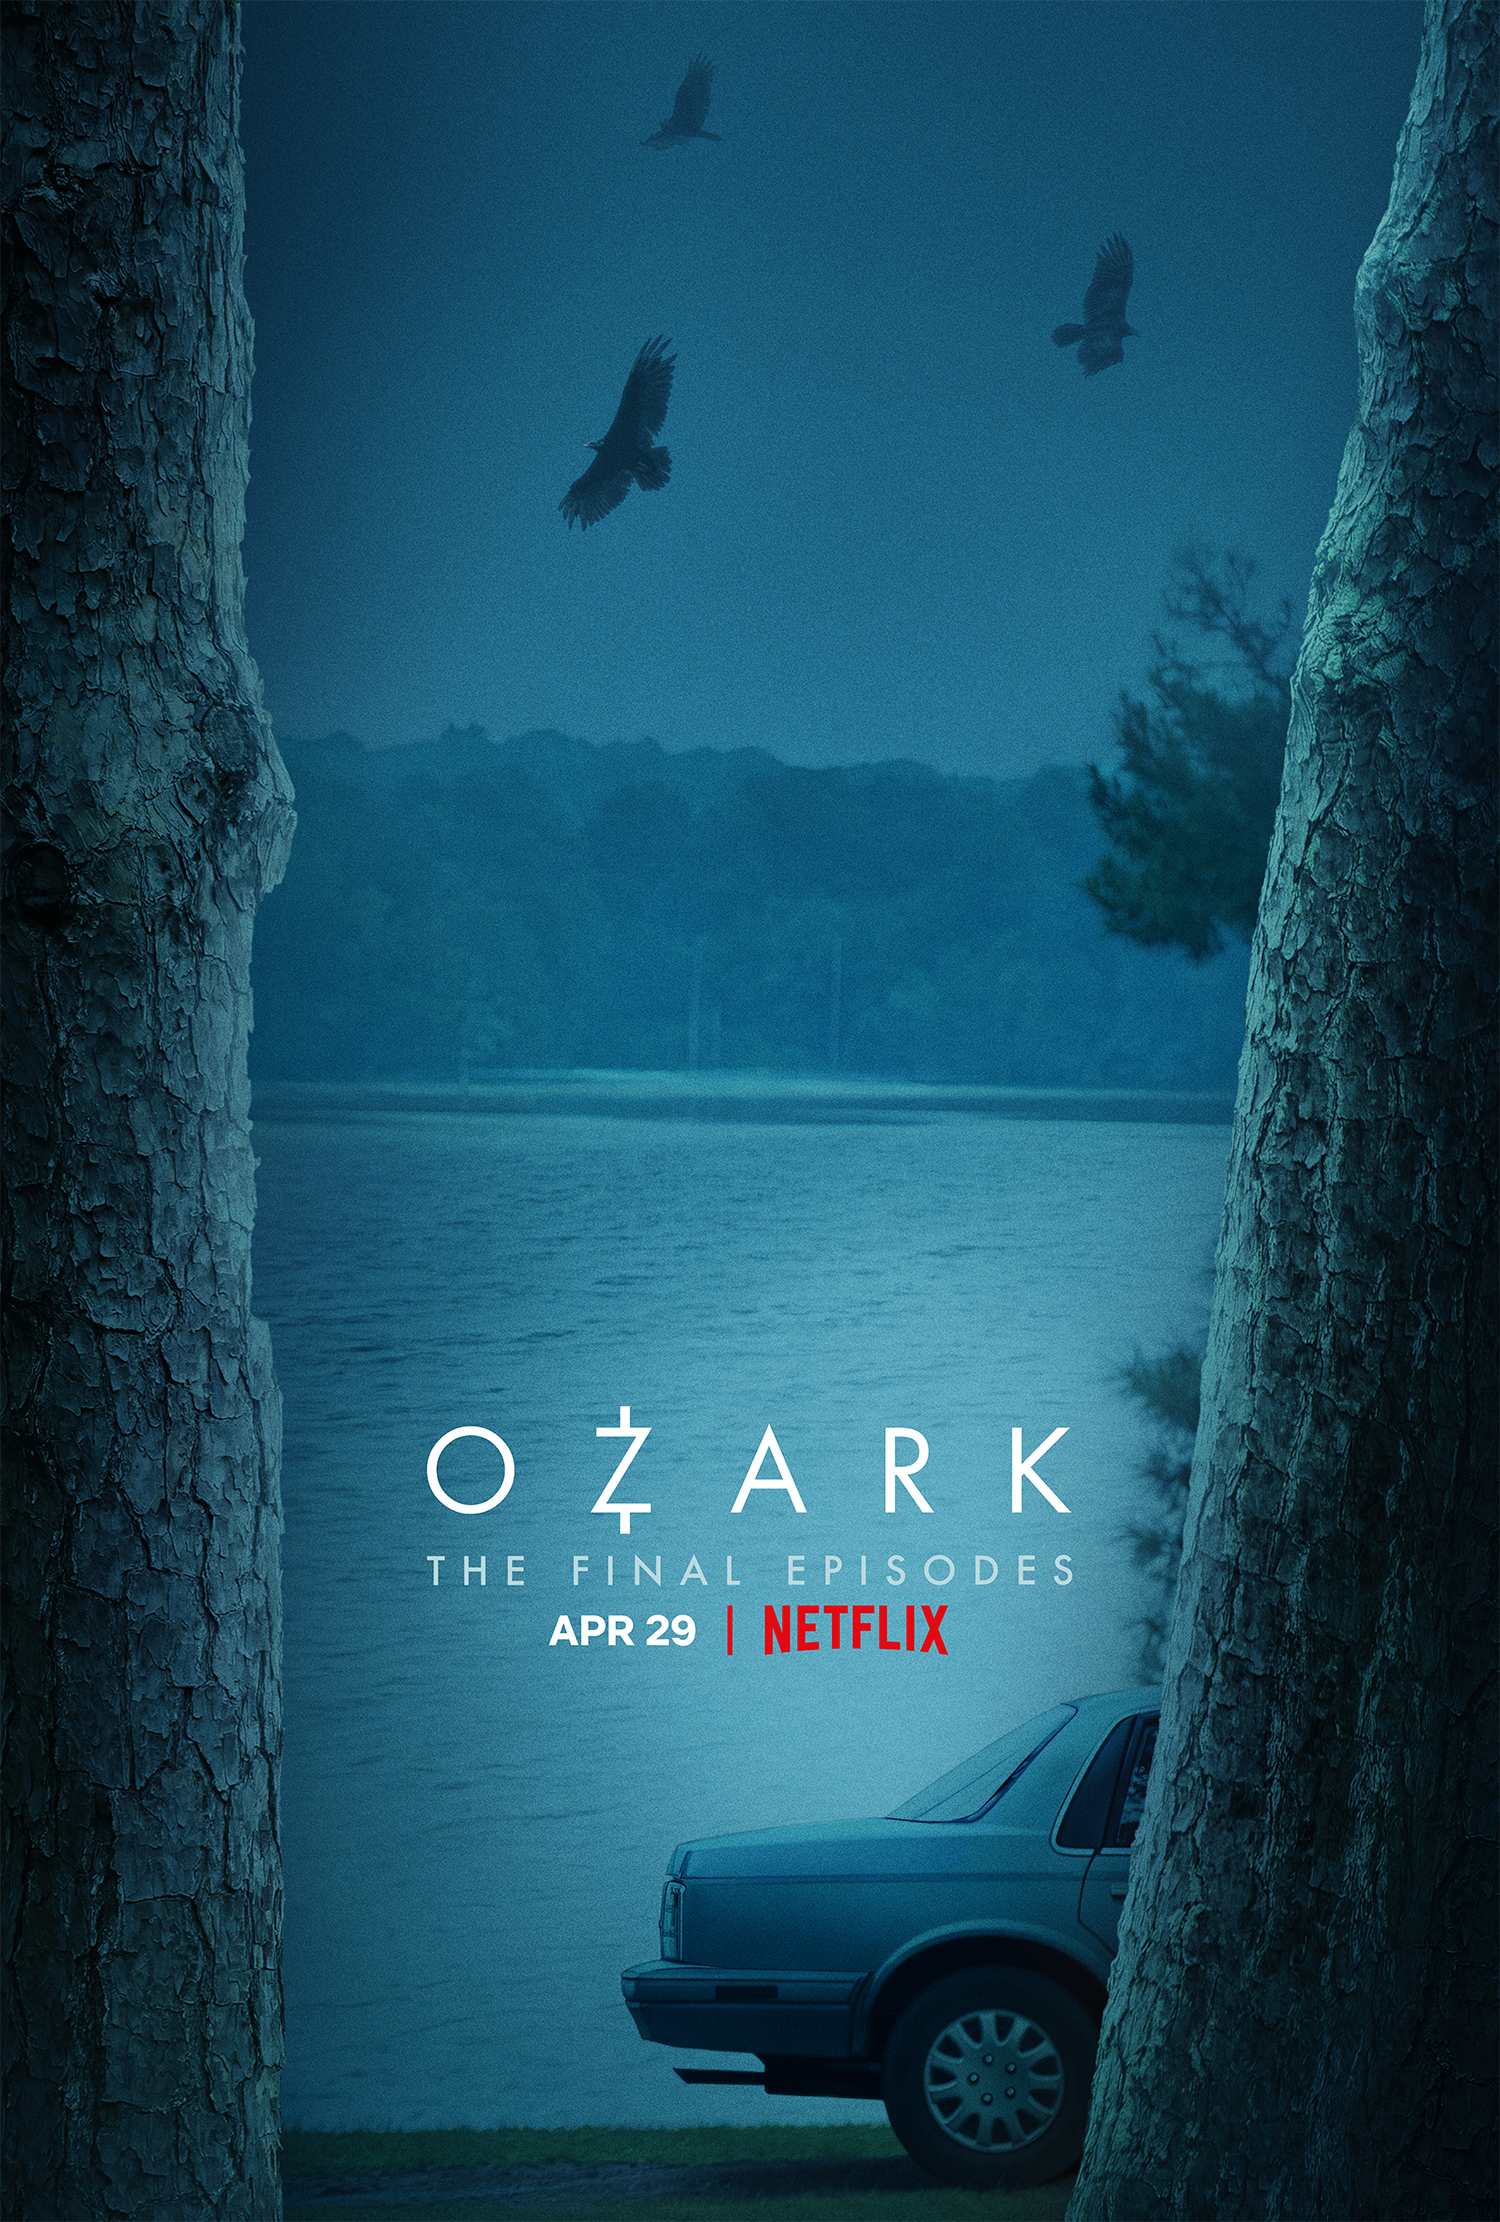 OZARK Season 4: THE FINAL EPISODES TO PREMIERE